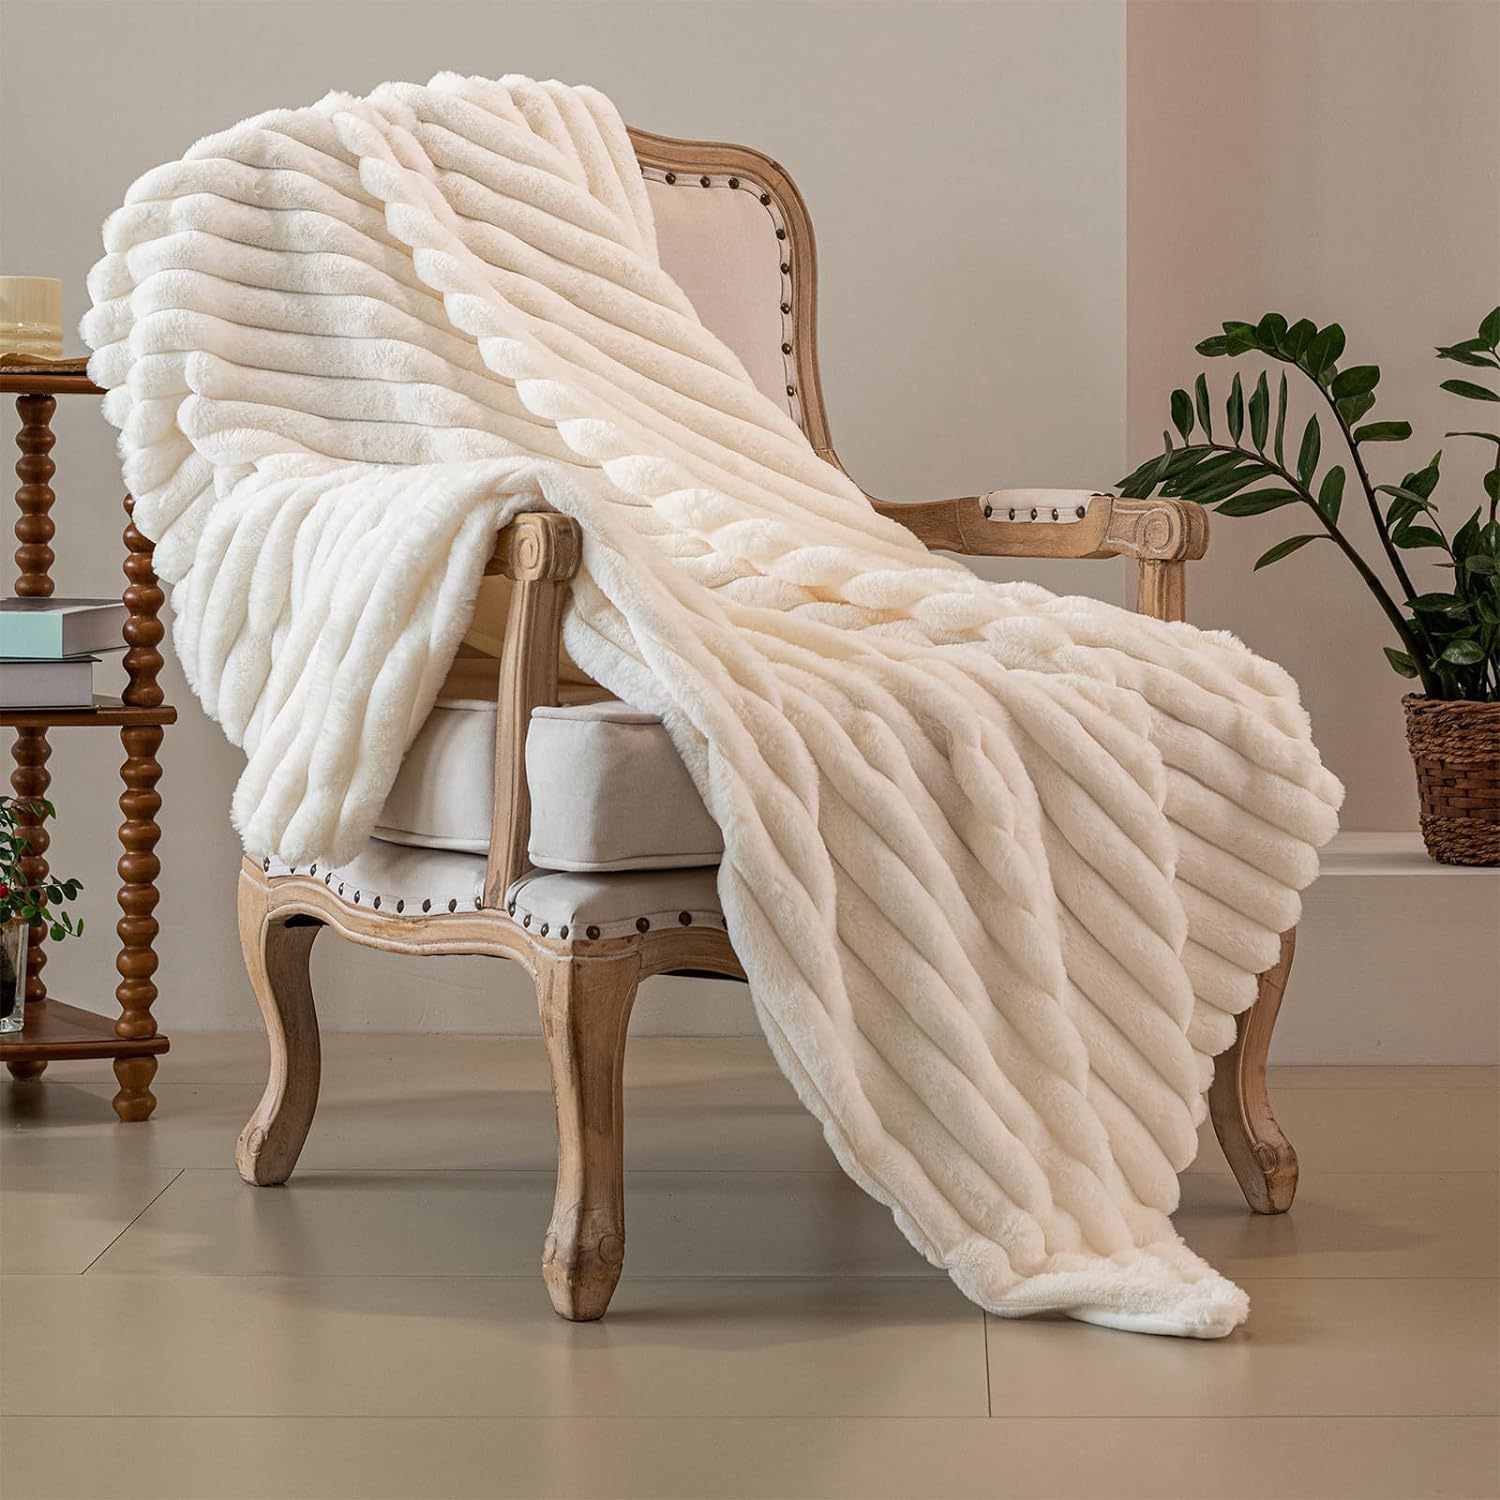 奶油色毛毯ins双层加厚盖毯沙发毯床上仿兔毛绒毯午睡空调毯搭毯